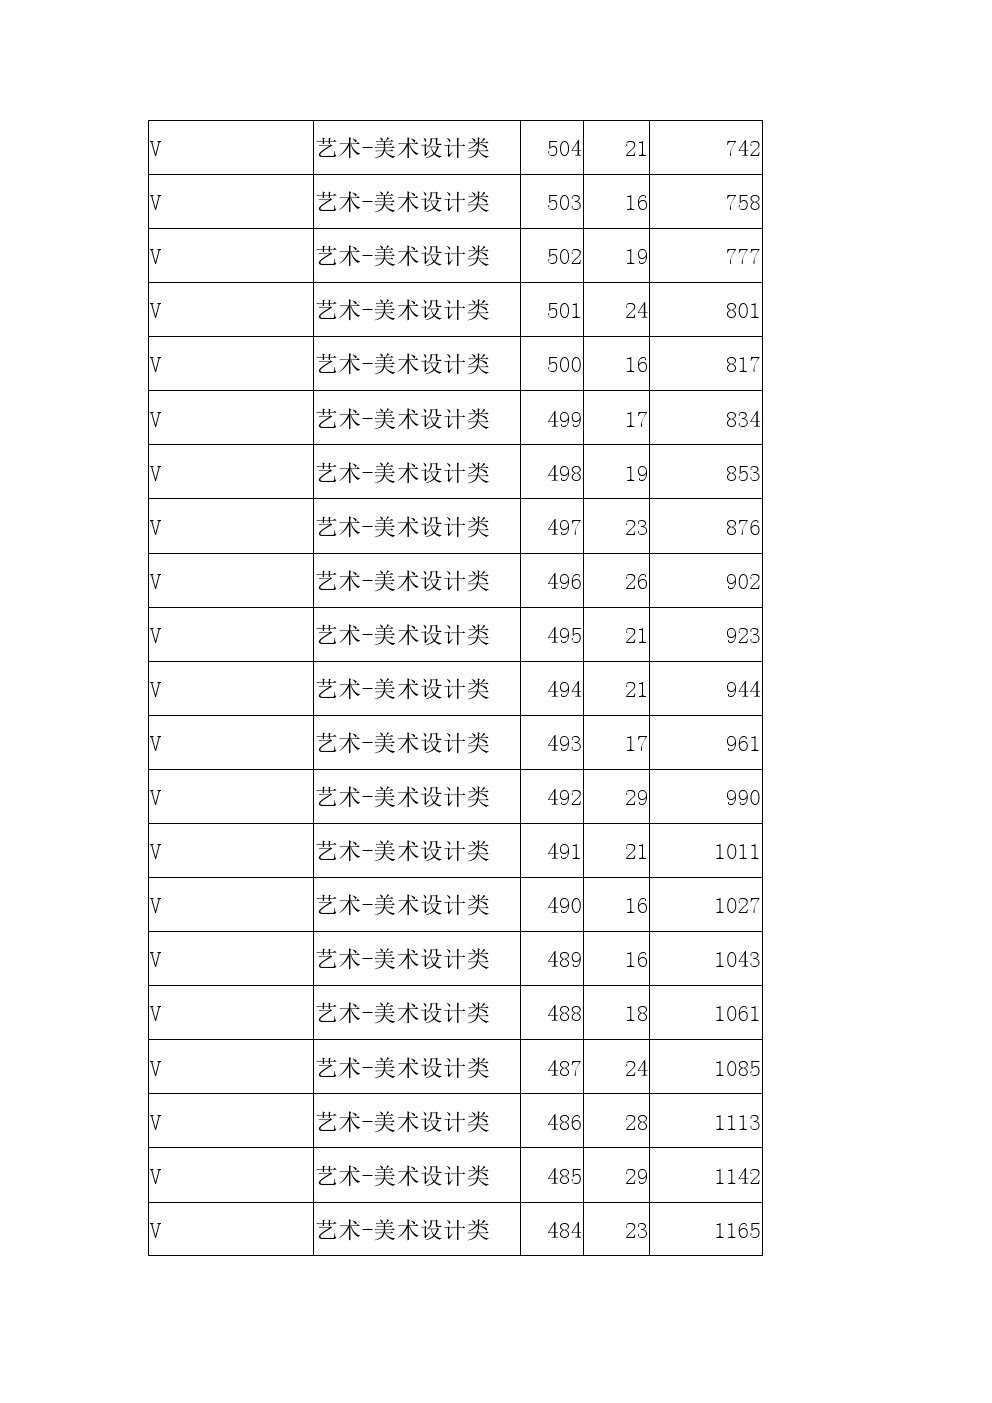 2021年河北省高职单招考试八类美术设计类一分一档表 